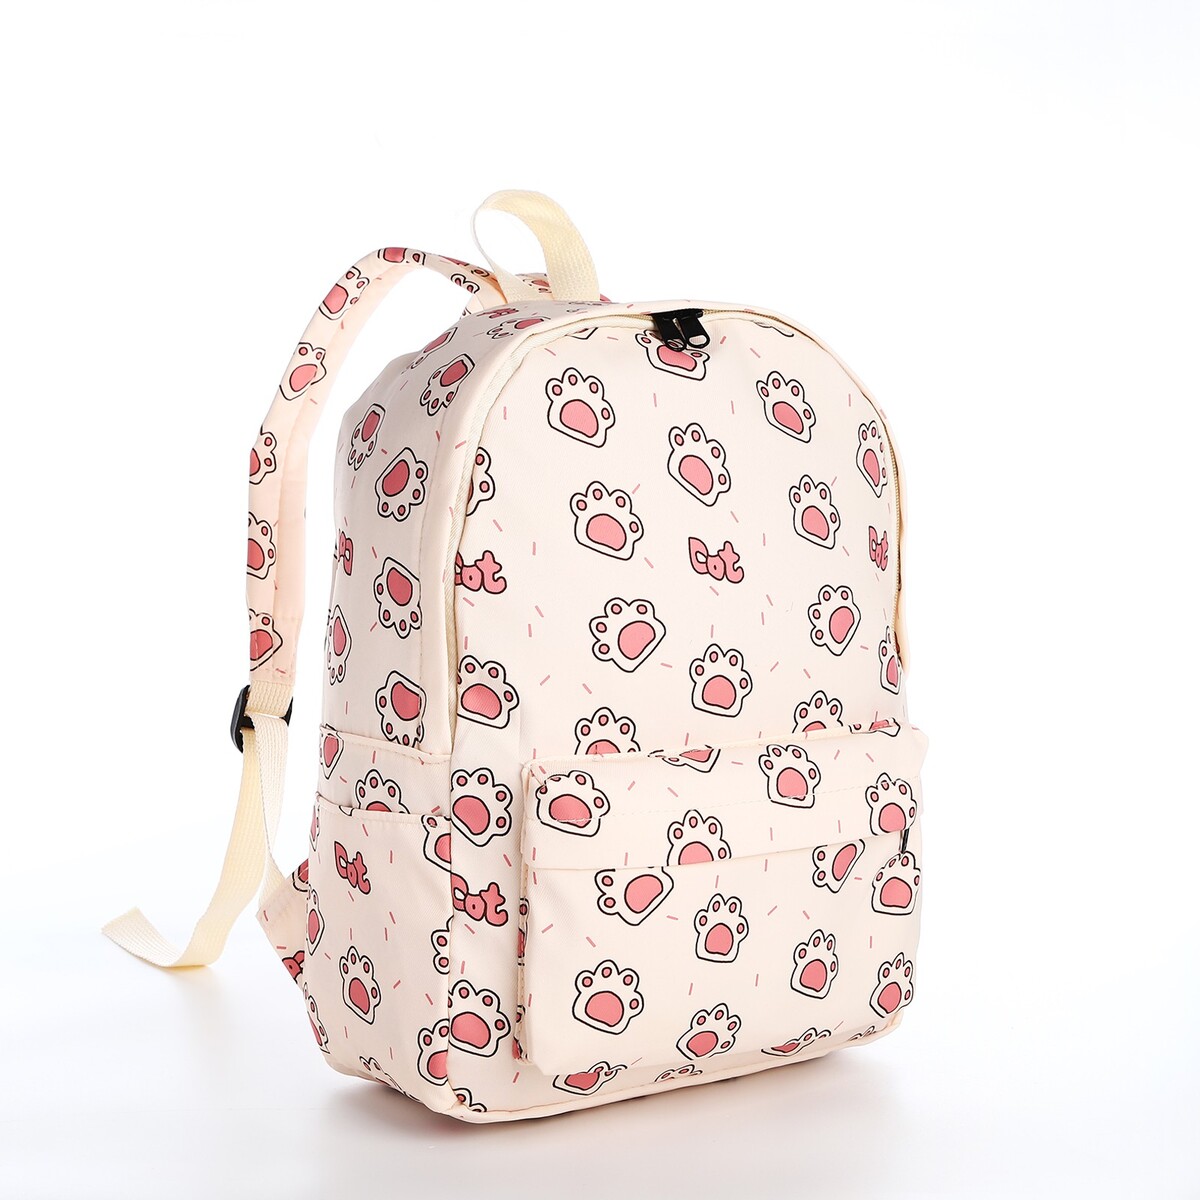 Рюкзак школьный из текстиля на молнии, 3 кармана, цвет бежевый/розовый рюкзак на молнии 3 наружных кармана бежевый